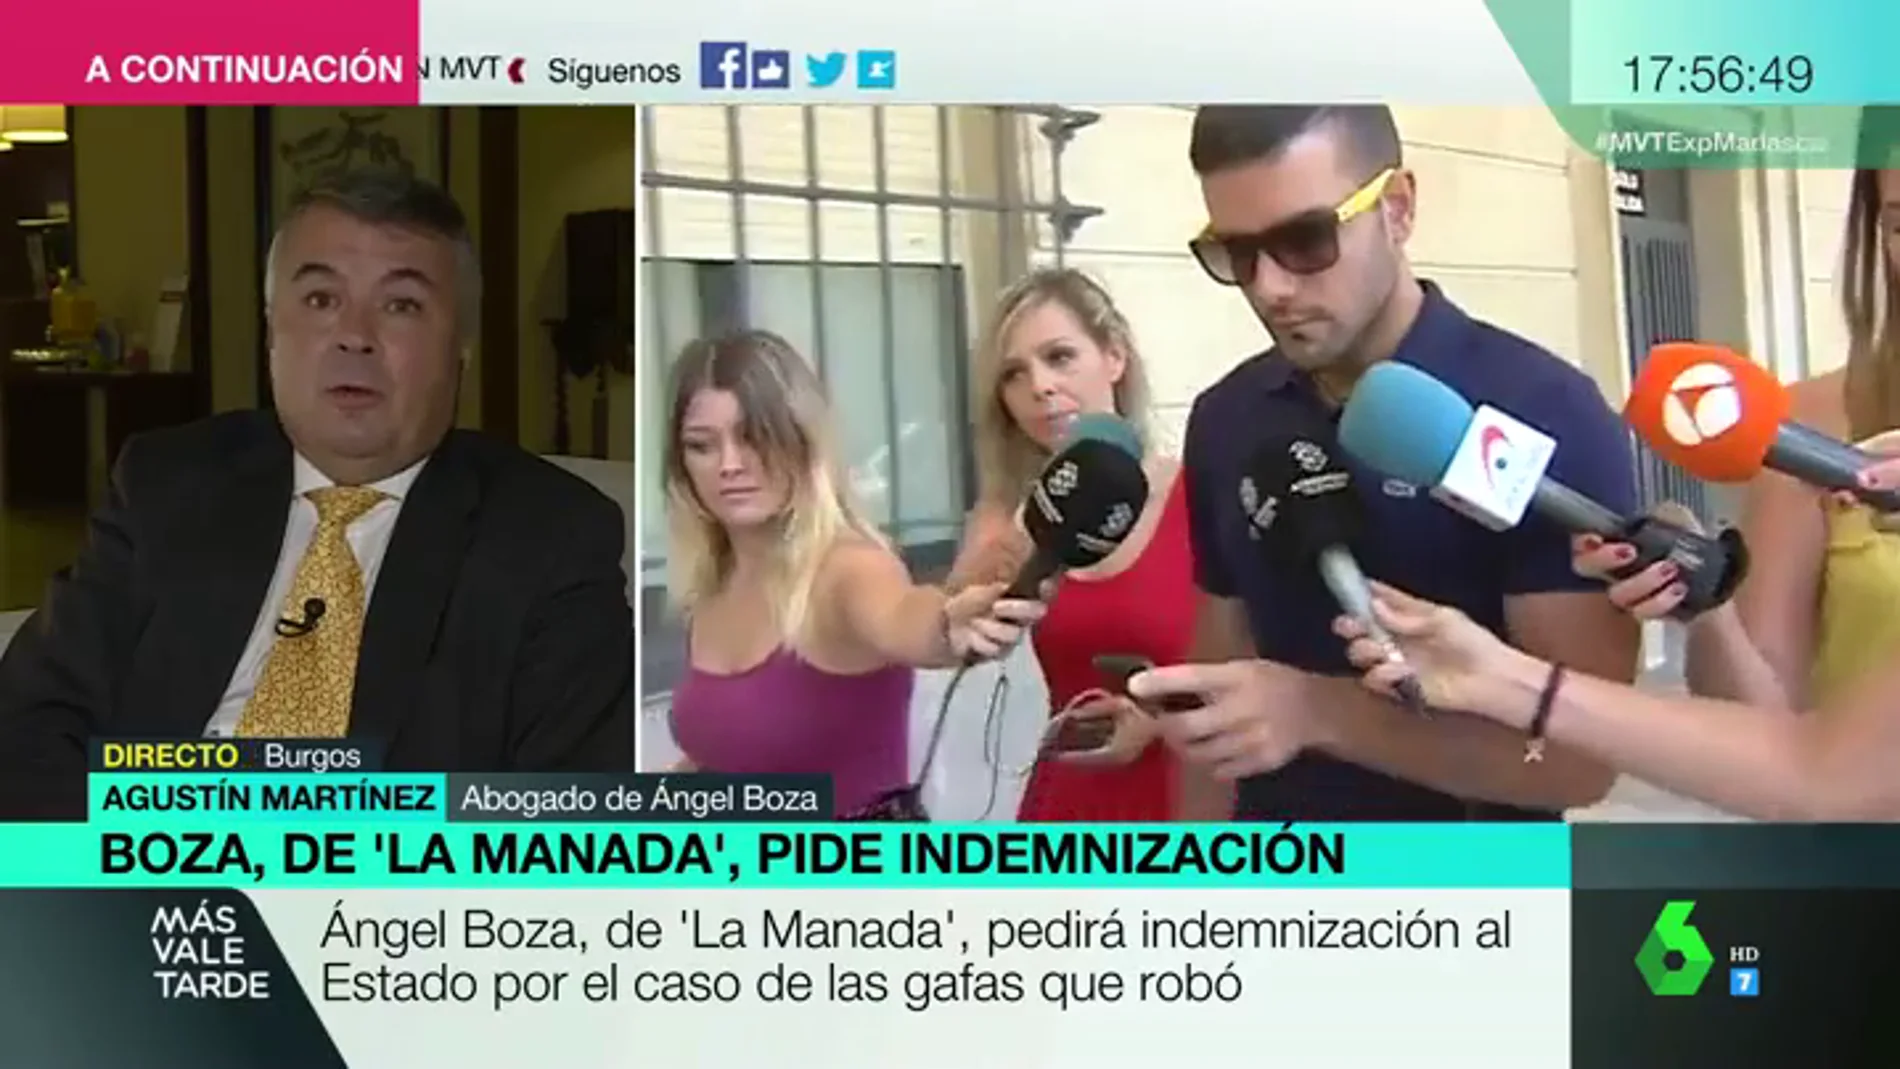 Agustín Martínez, abogado de 'La Manada': "Ángel Boza ha estado cuatro meses en prisión. El Estado debe responder por una mala actuación de la justicia"